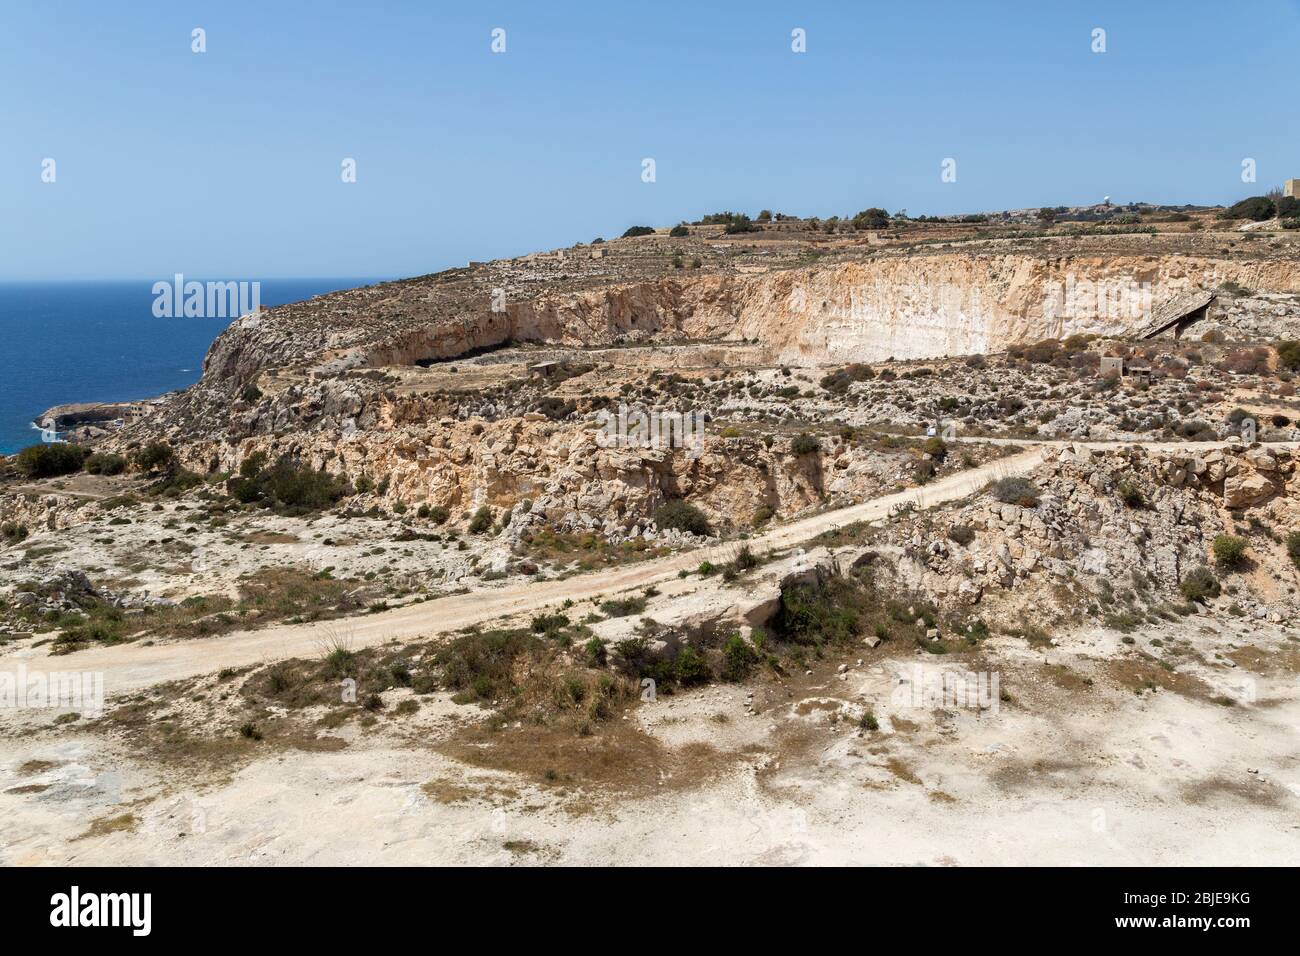 Resti di cave nei pressi dei templi di Mnajdra, Qrendi, Malta Foto Stock